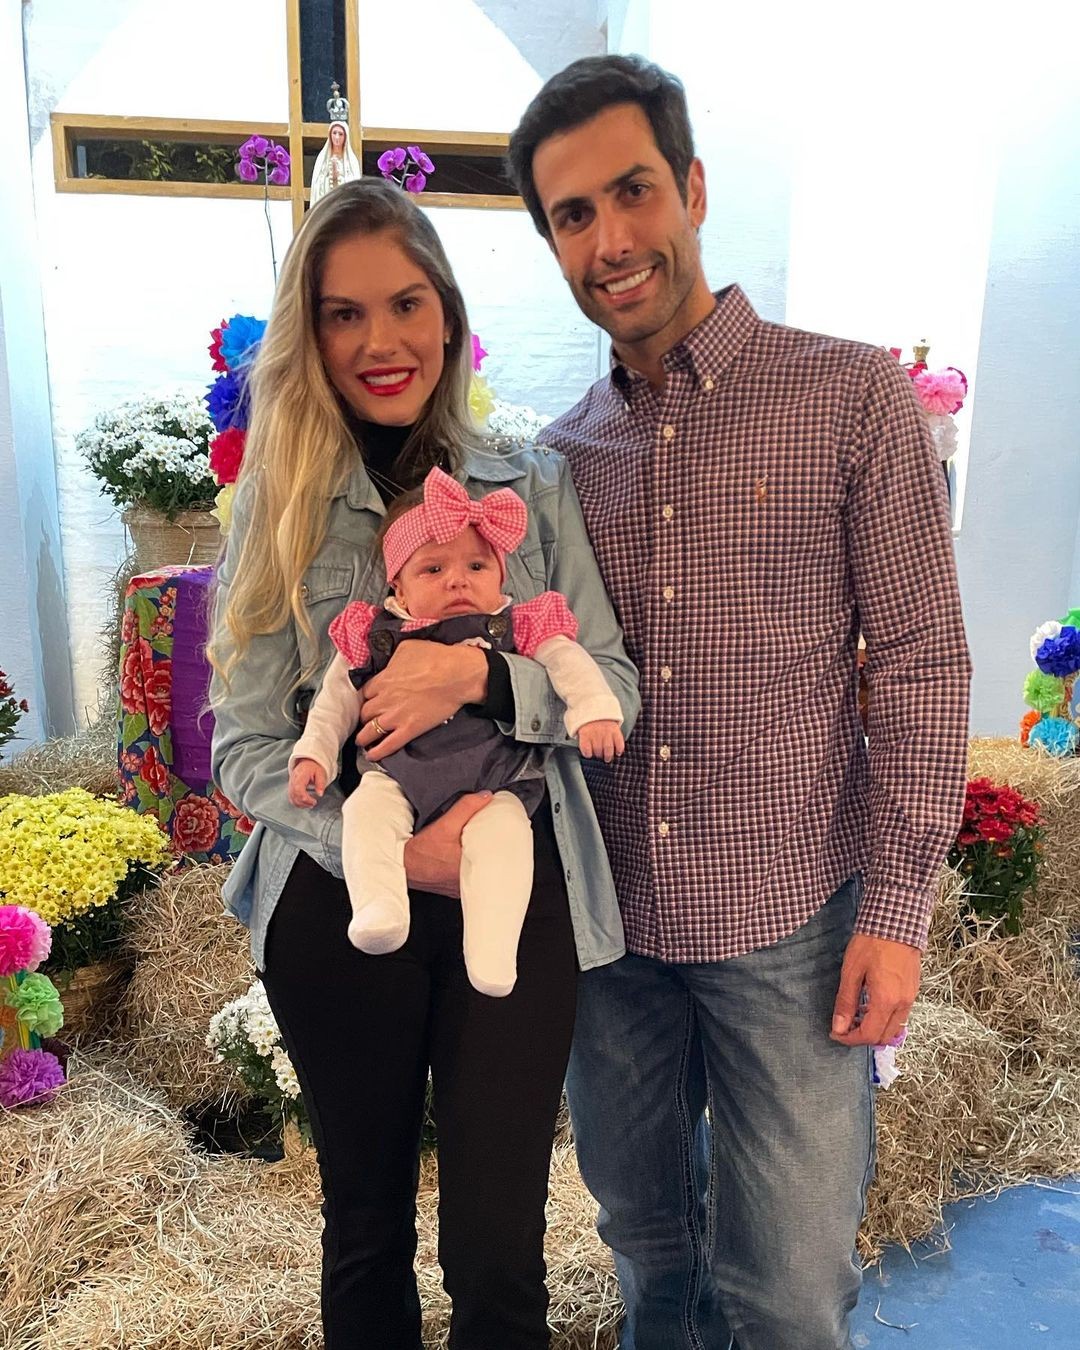 Bárbara Evans encanta a web ao mostrar filha em festa junina (Foto: reprodução/ Instagram)